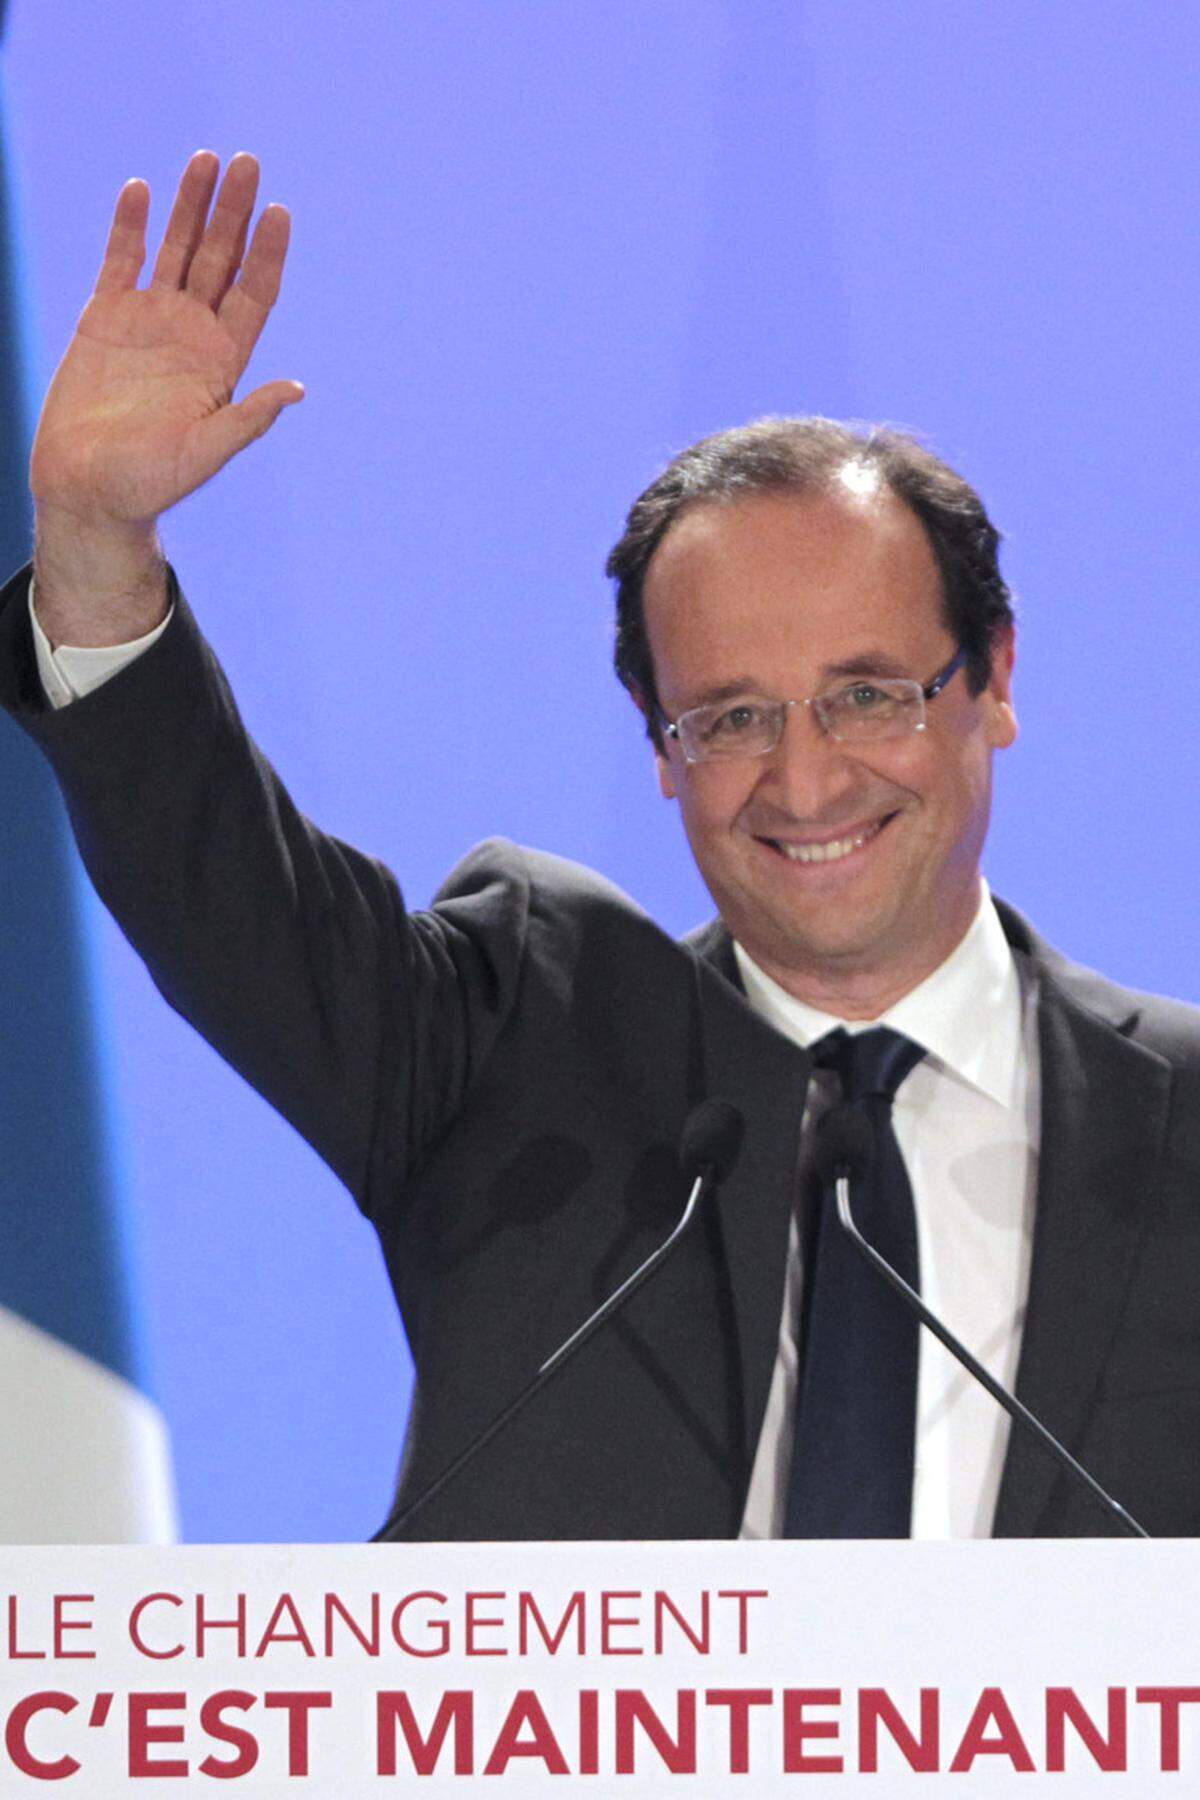 "Ich stehe für den Wandel", sagt Hollande, um im gleichen Atemzug alle zu seiner Wahl am 6. Mai aufzurufen, die "ein neues Frankreich" wollen.